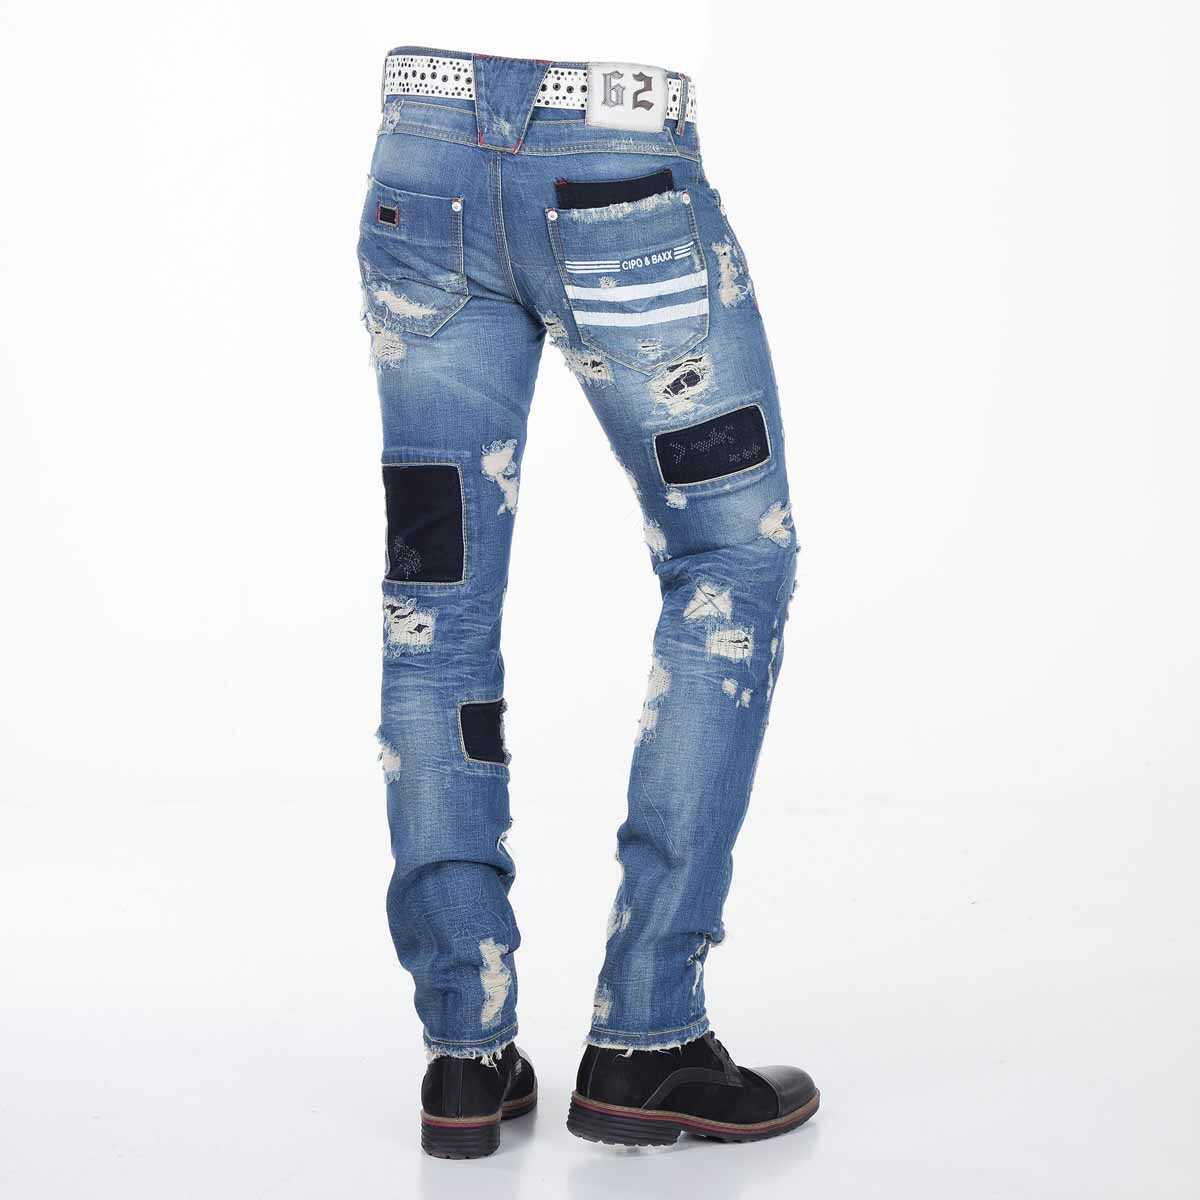 CD347 Herren bequeme Jeans im stylischen Destroyed-Look - Cipo and Baxx - Herren Jeans - Letzte Chance! -